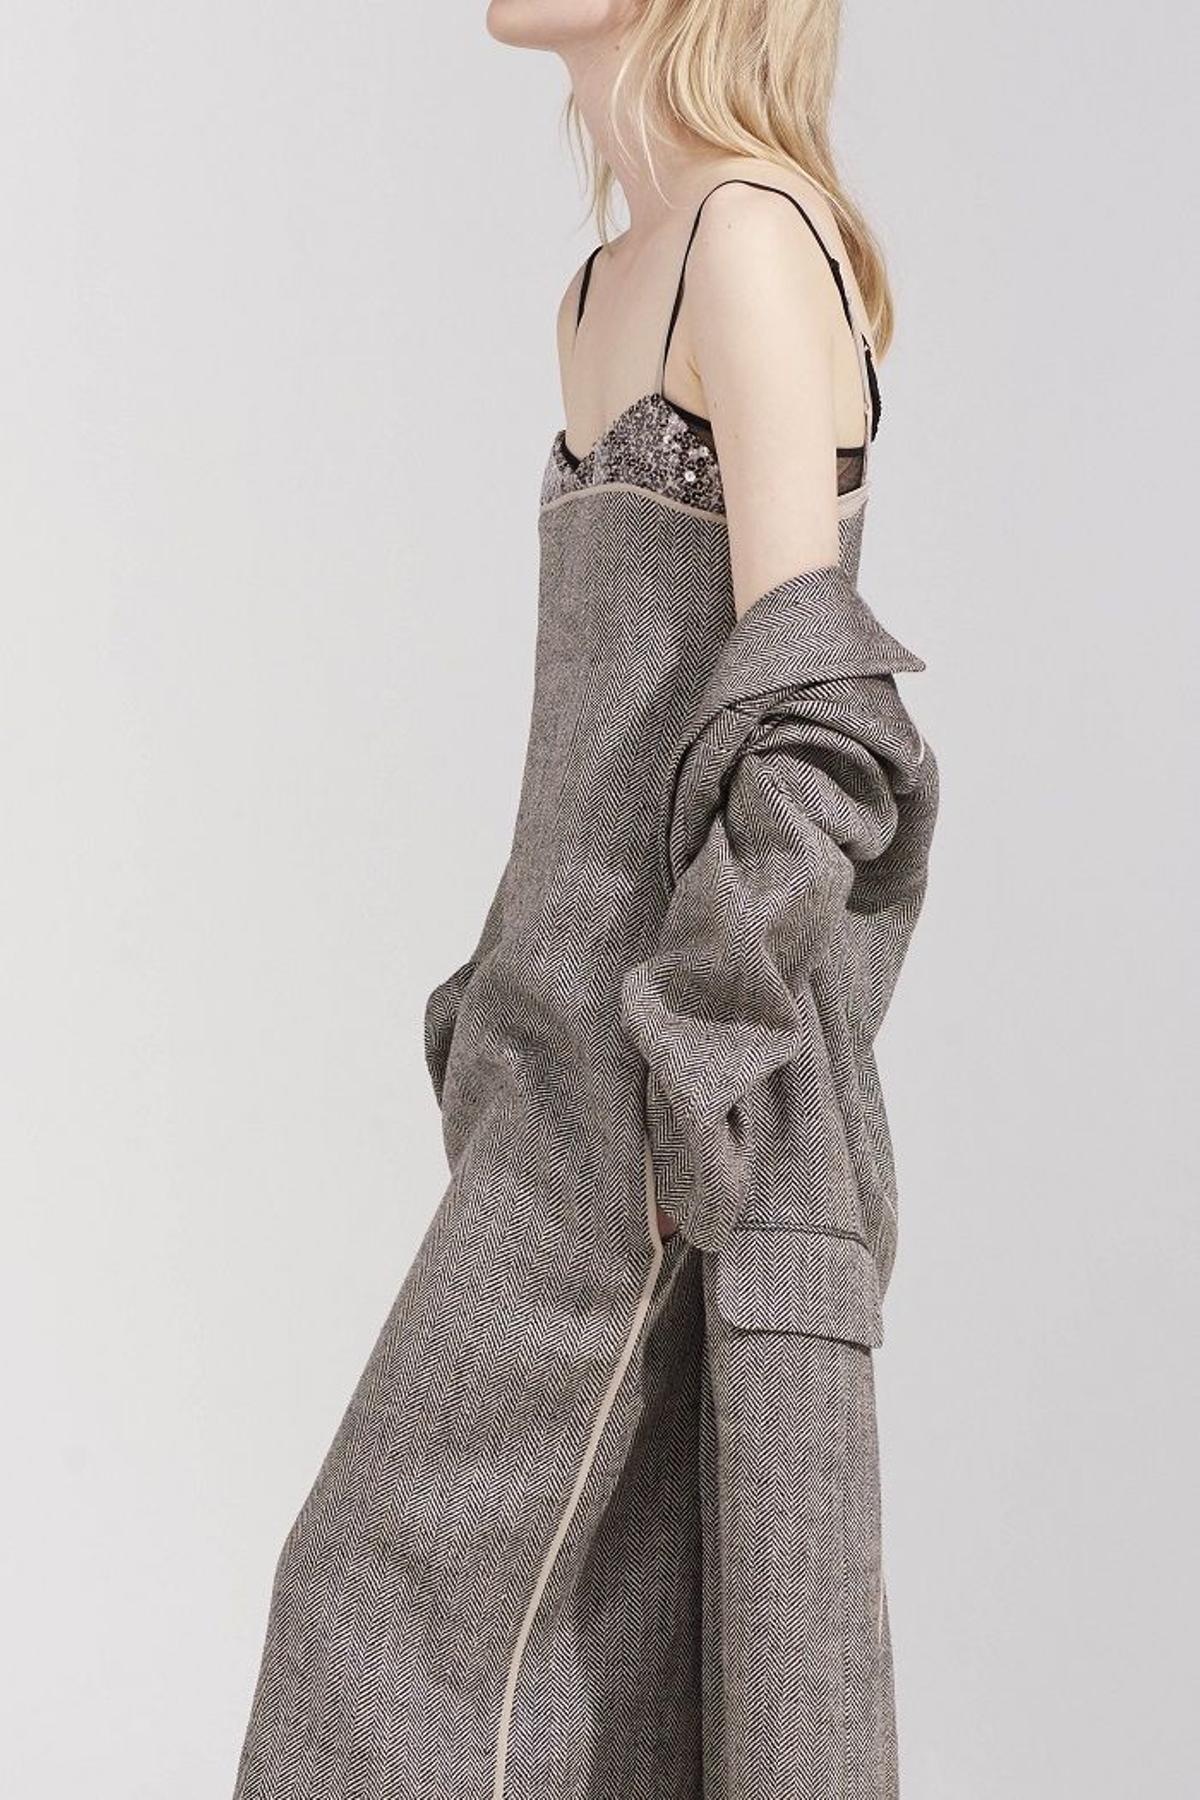 Nina Ricci colección primavera 2016, vestido jaspeado